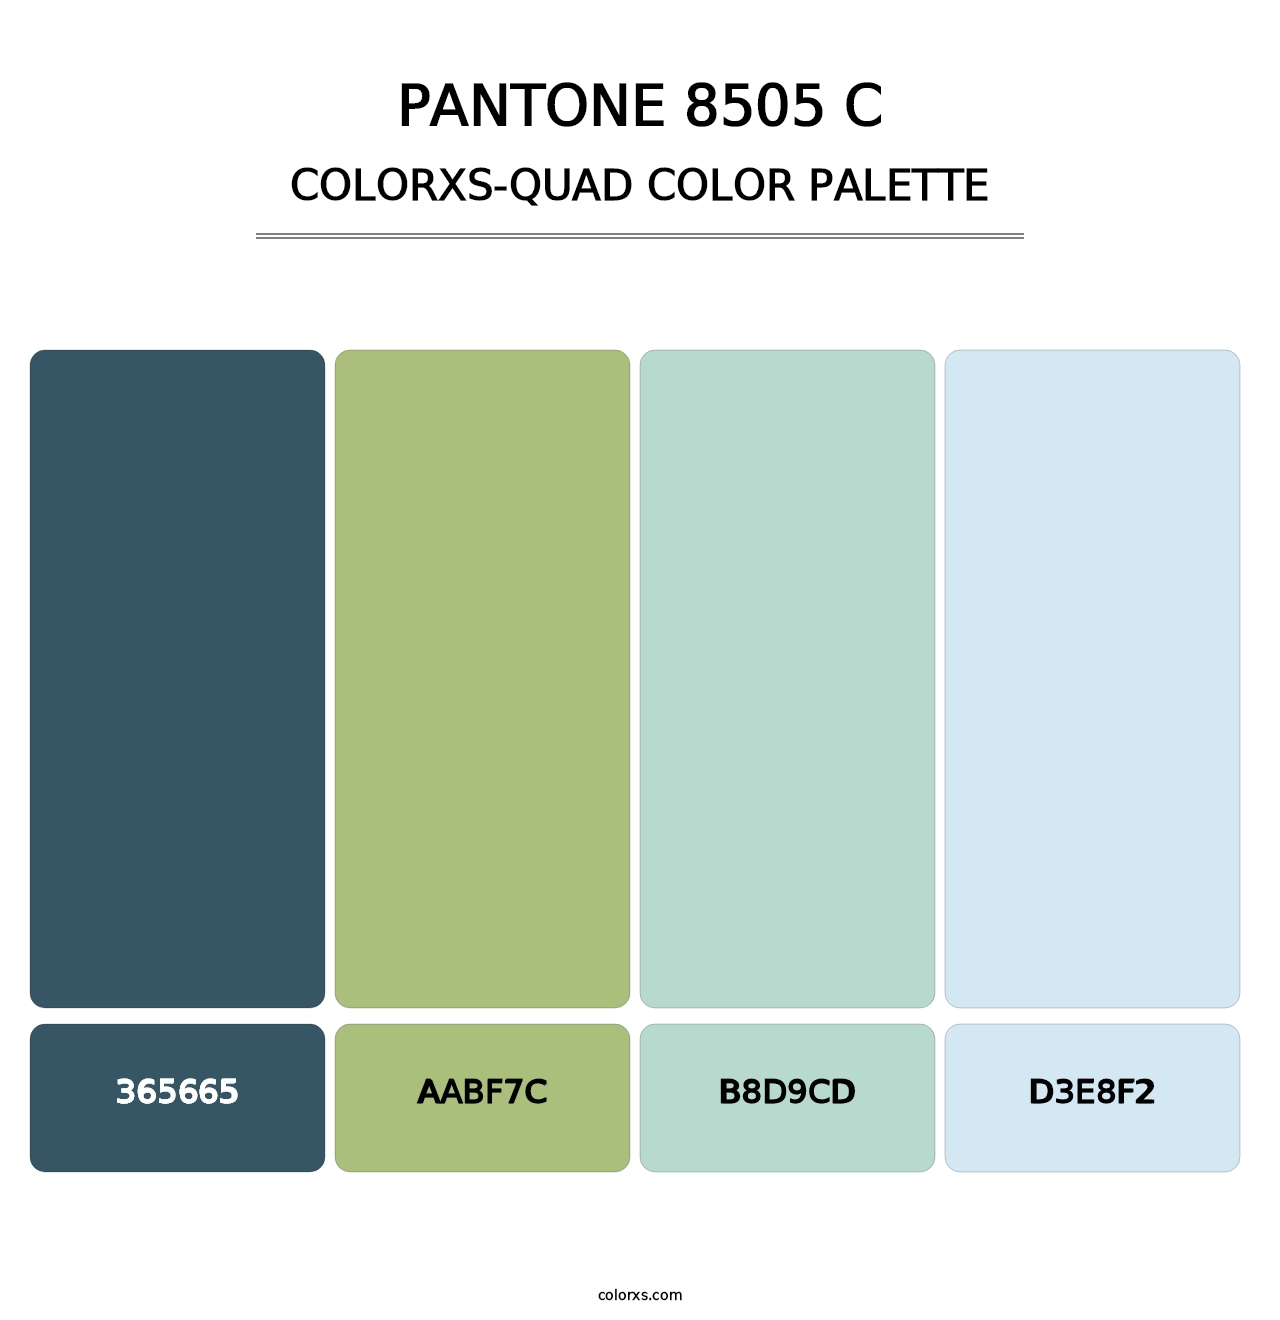 PANTONE 8505 C - Colorxs Quad Palette